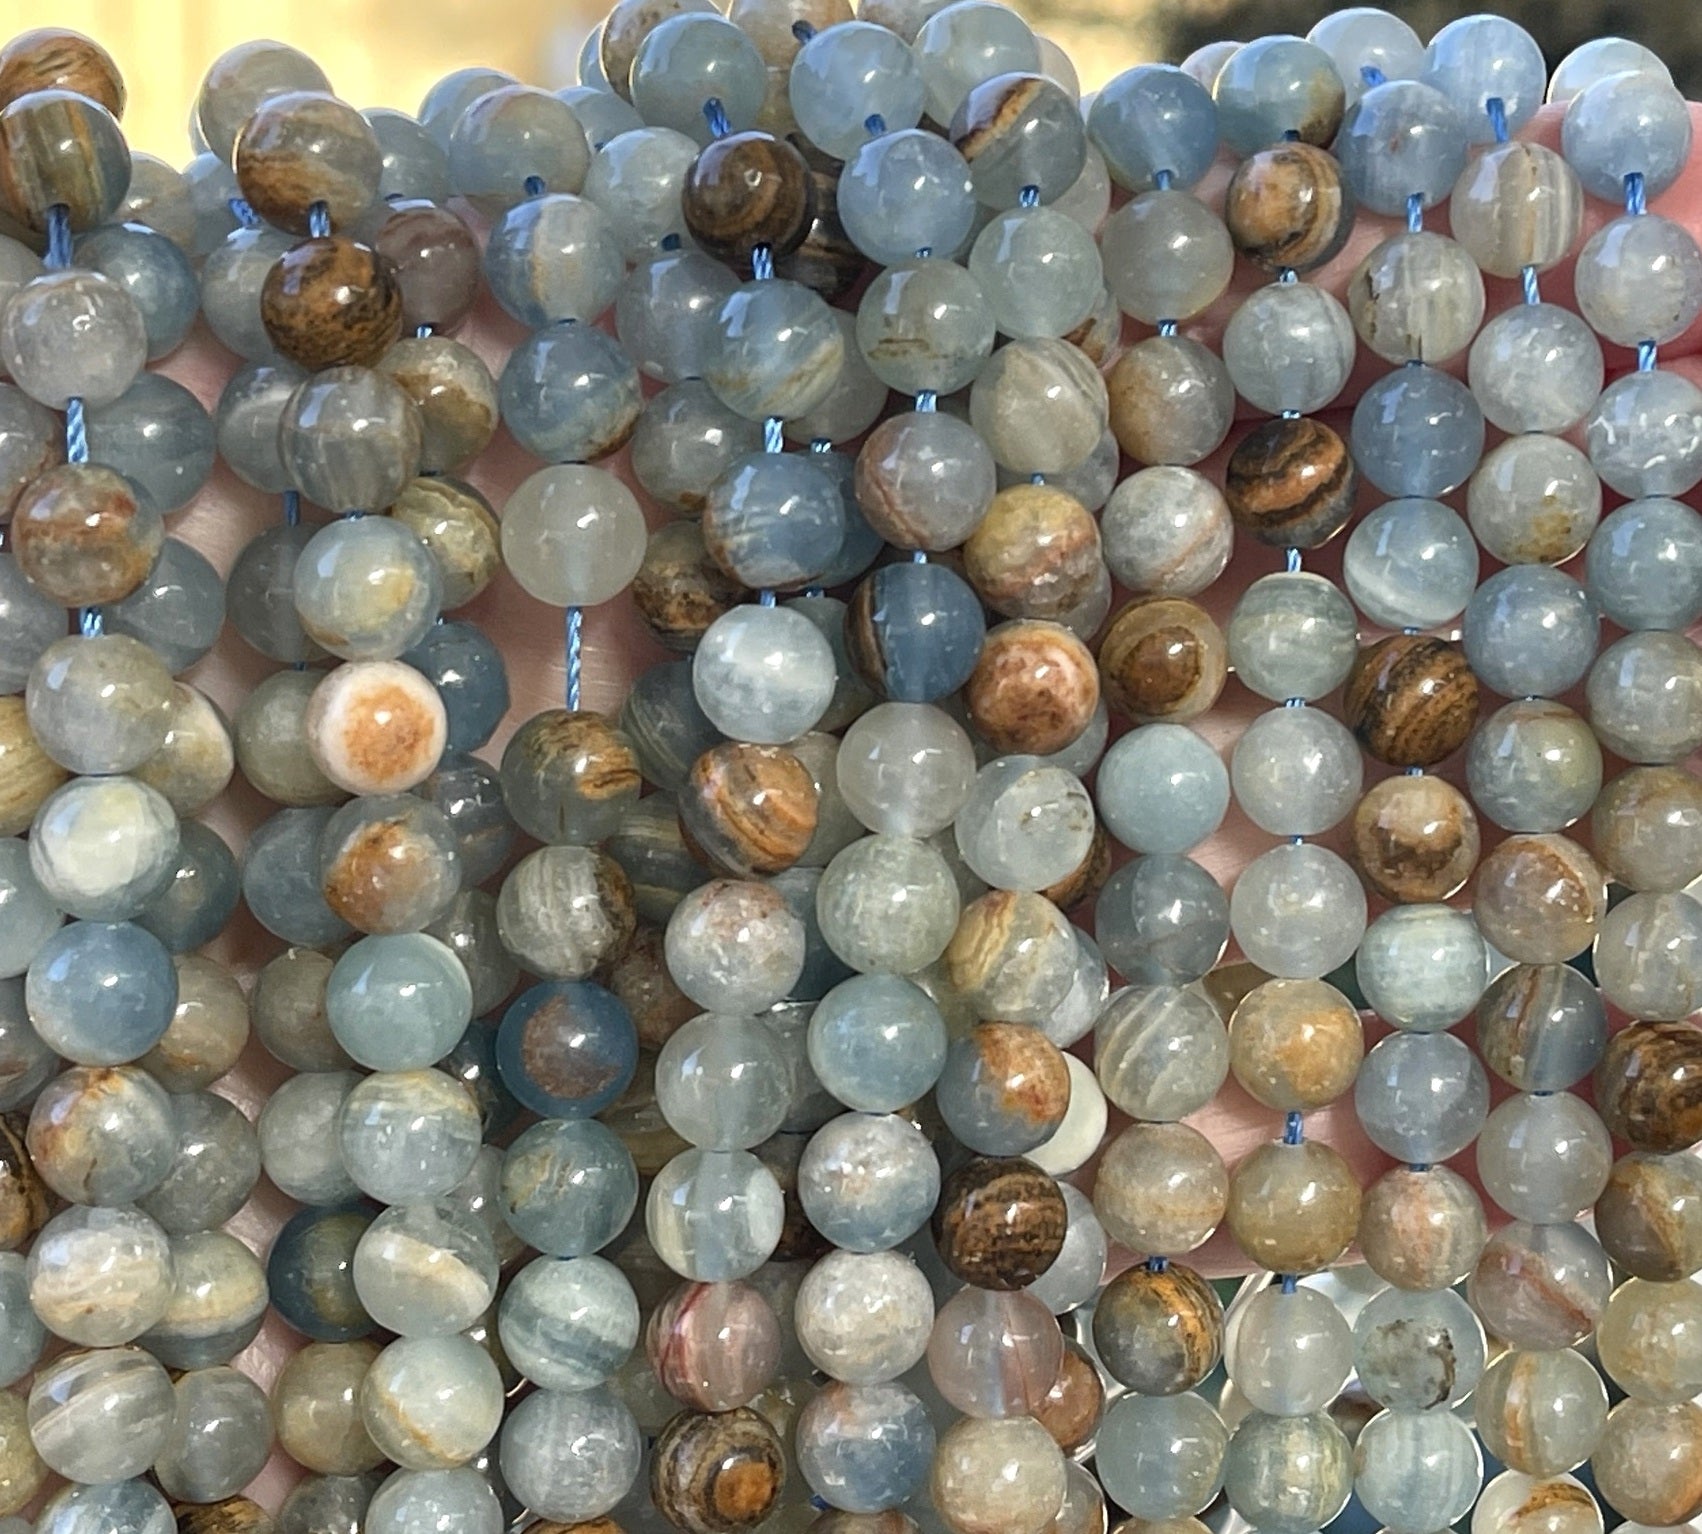 Argentina Lemurian Aquatine Calcite 8mm round natural gemstone beads 15.5" strand